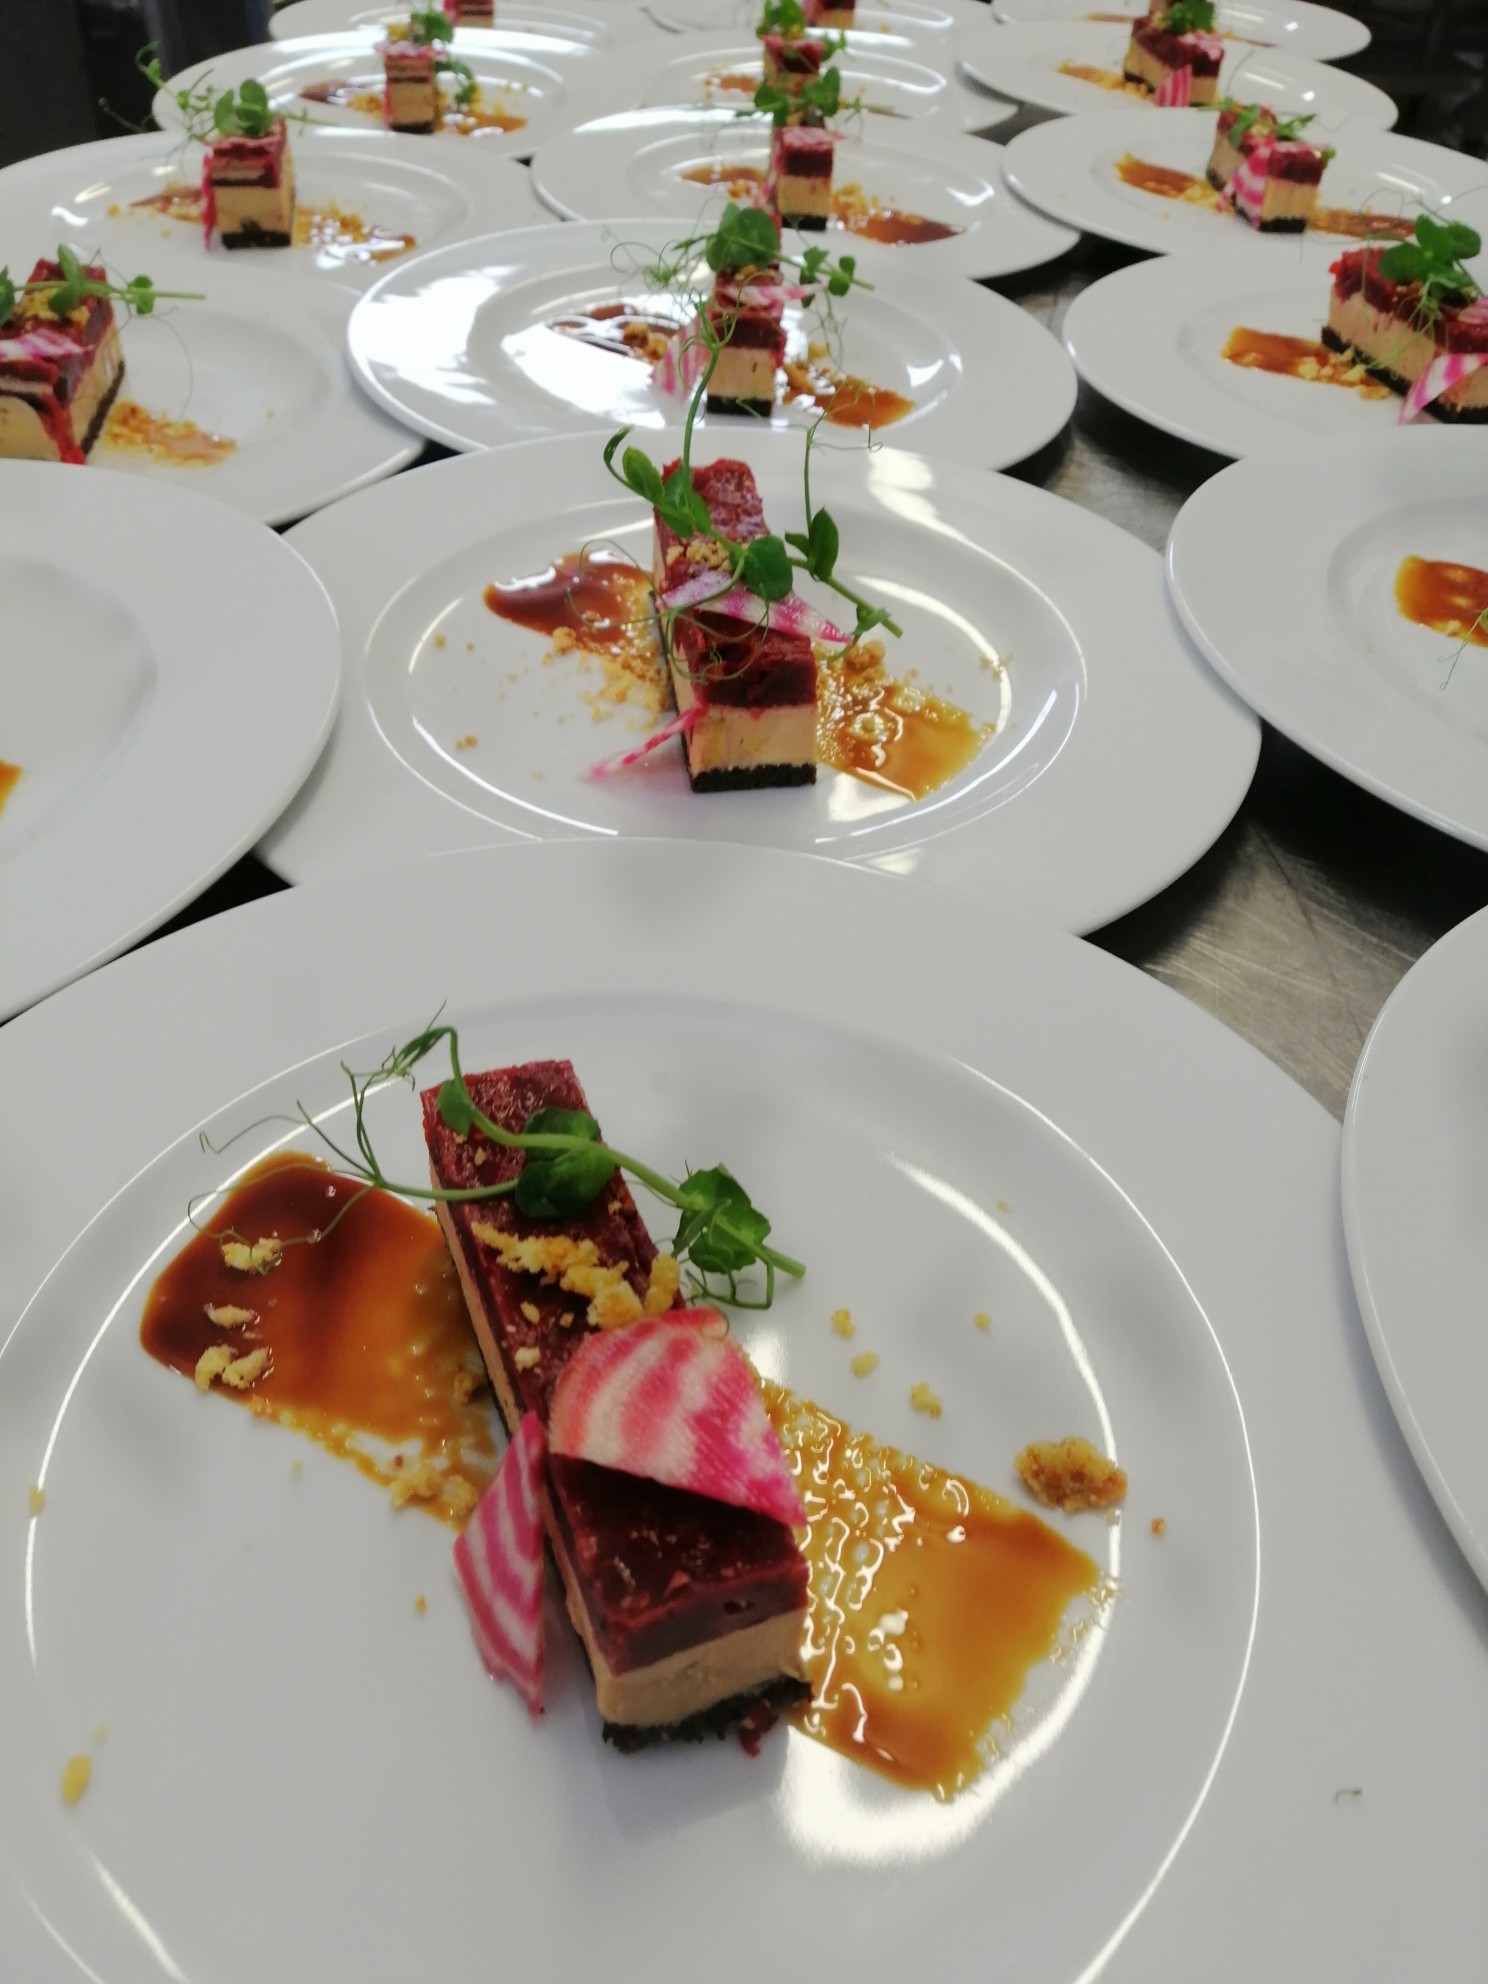 Rectiligne de foie gras et betterave